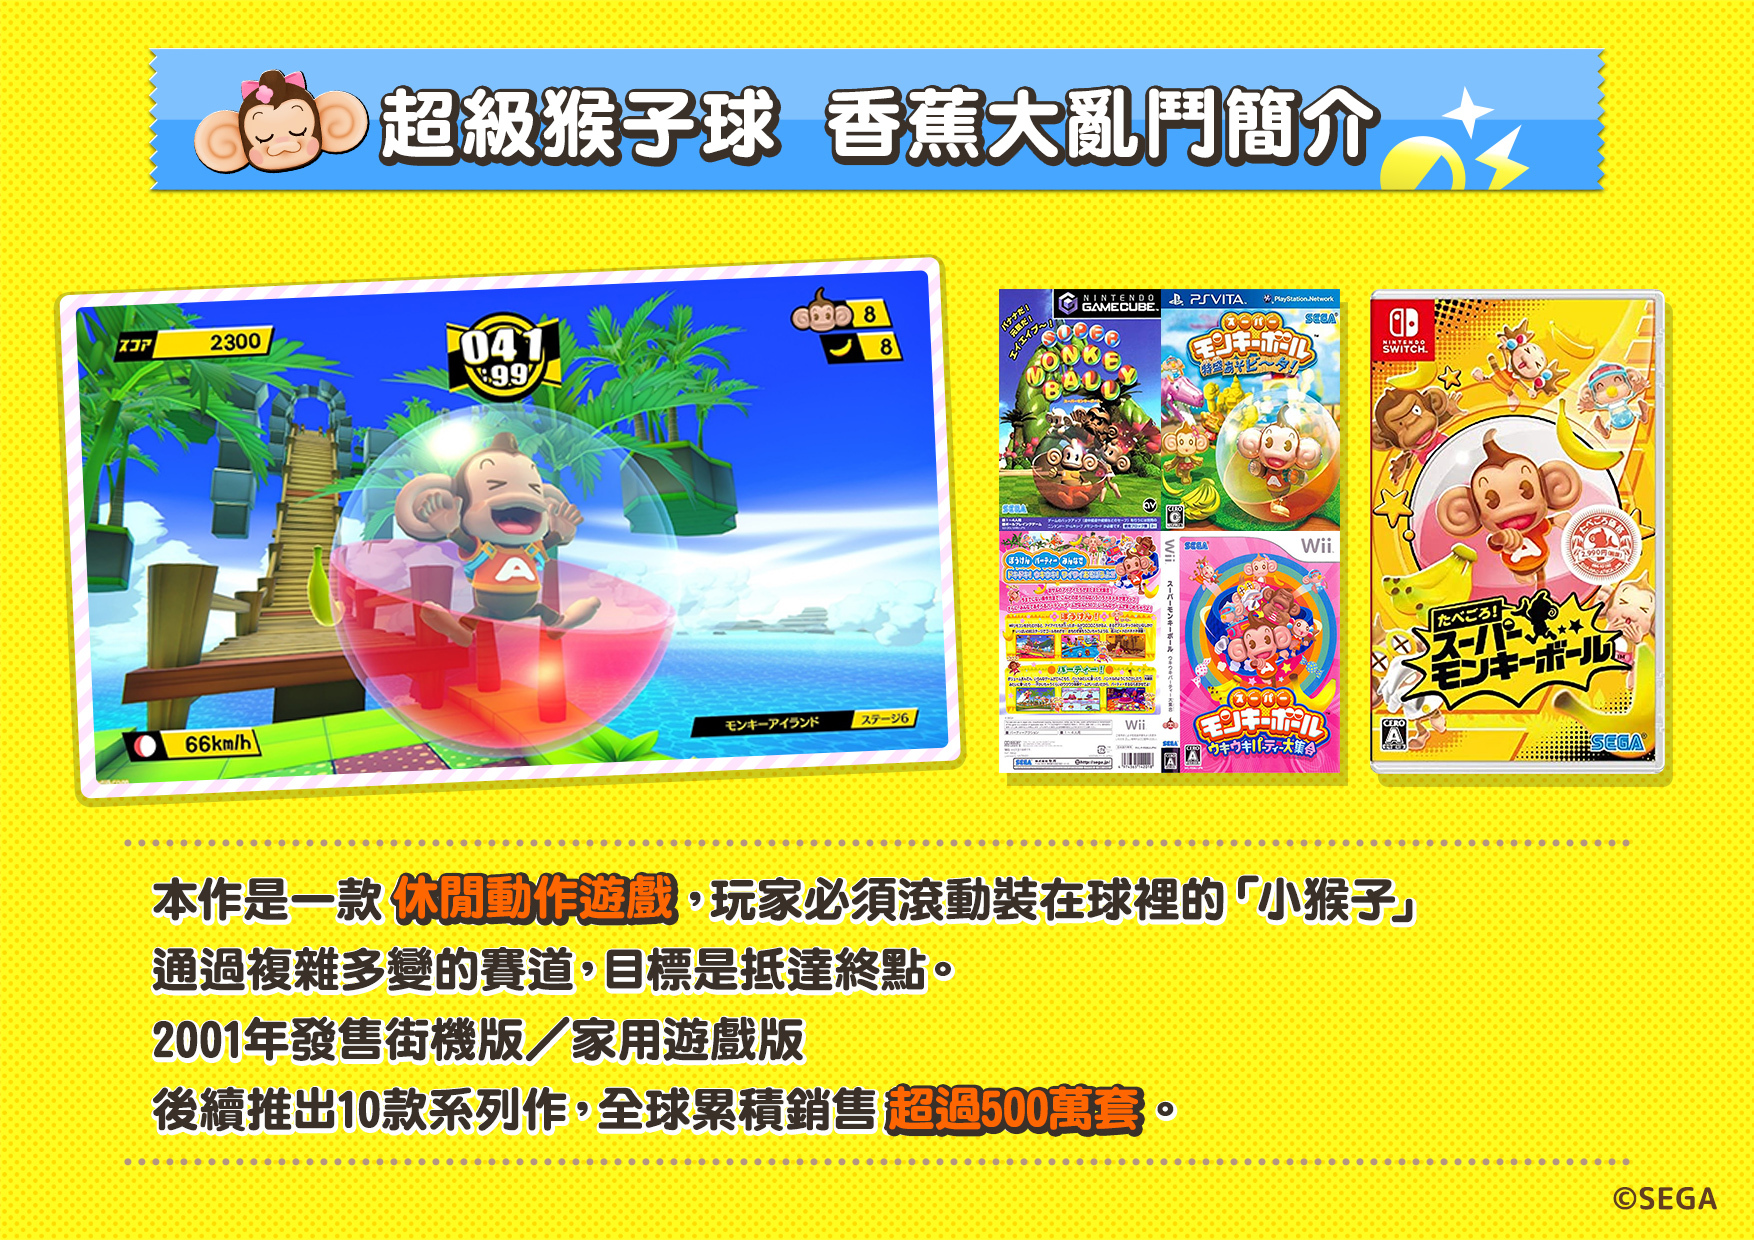 16 人线上对战！ 《超级猴子球 香蕉大乱斗》中文实机游玩影片亮相